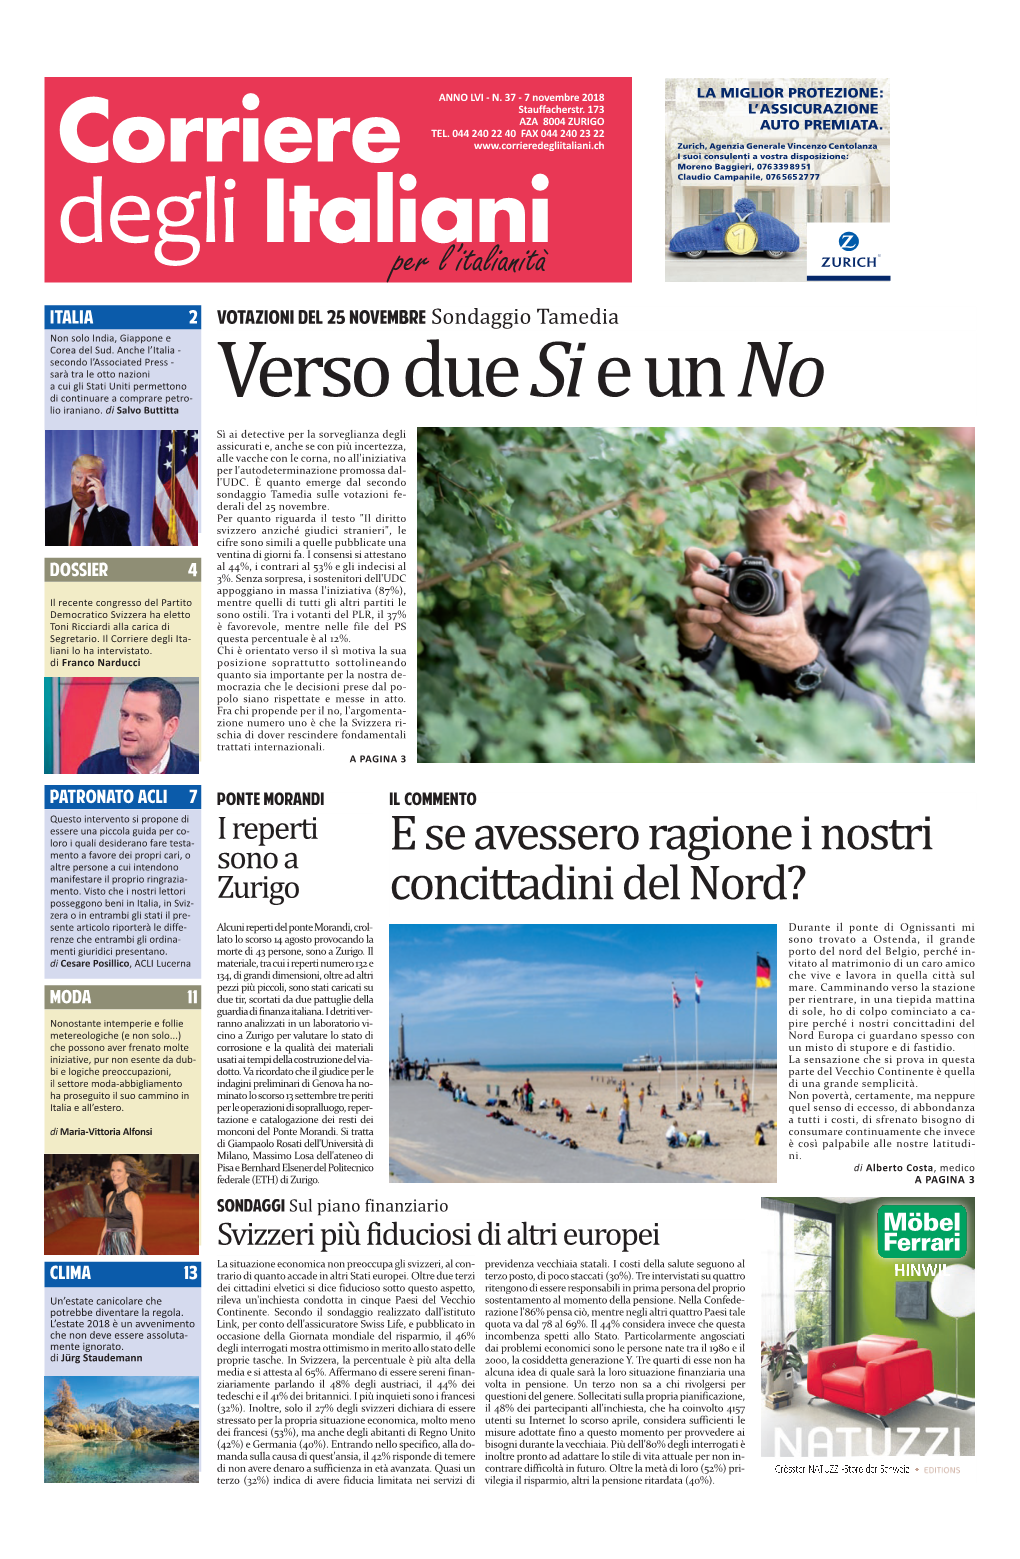 Corriere Degli Italiani 2 ATTUALITÀ ITALIANA Mercoledì 7 Novembre 2018 Politica Ed Economia ISTAT